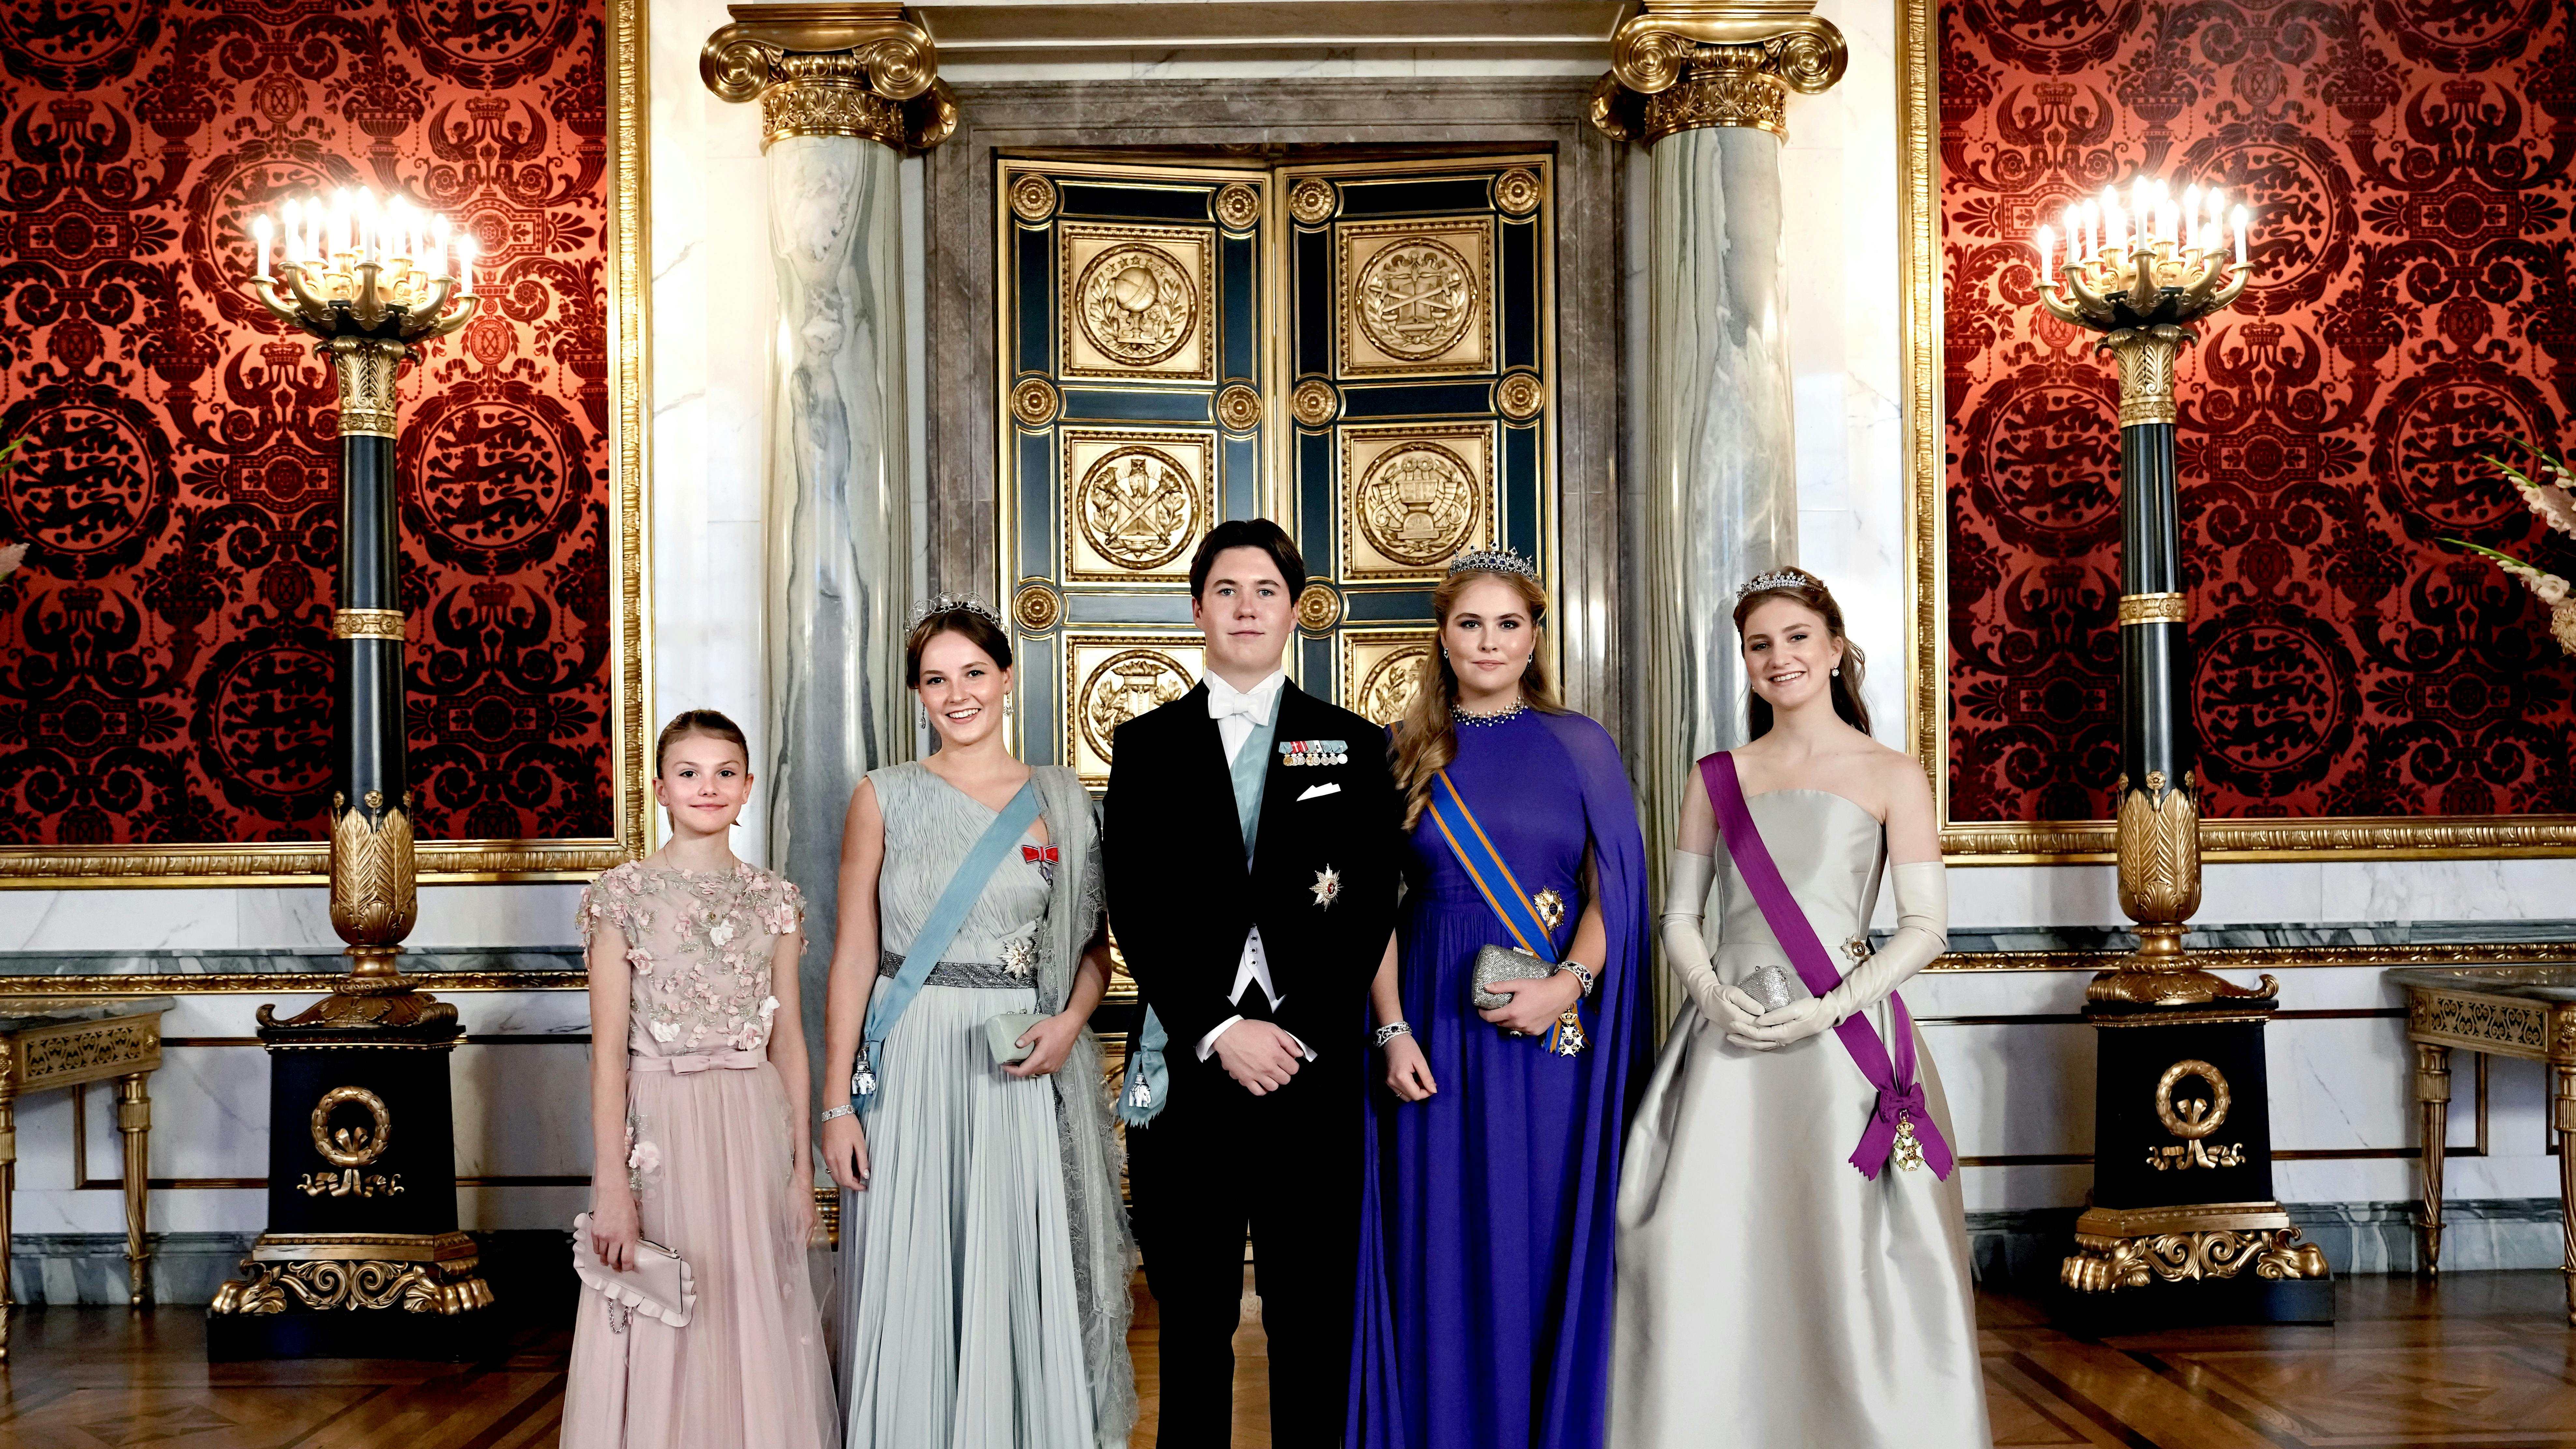 Prinsesse Elisabeth ses her til højre på billedet sammen med Hollands prinsesse Amalia, kronprins Christian, Norges prinsesse Ingrid Alexandra og Sveriges prinsesse Estelle. 